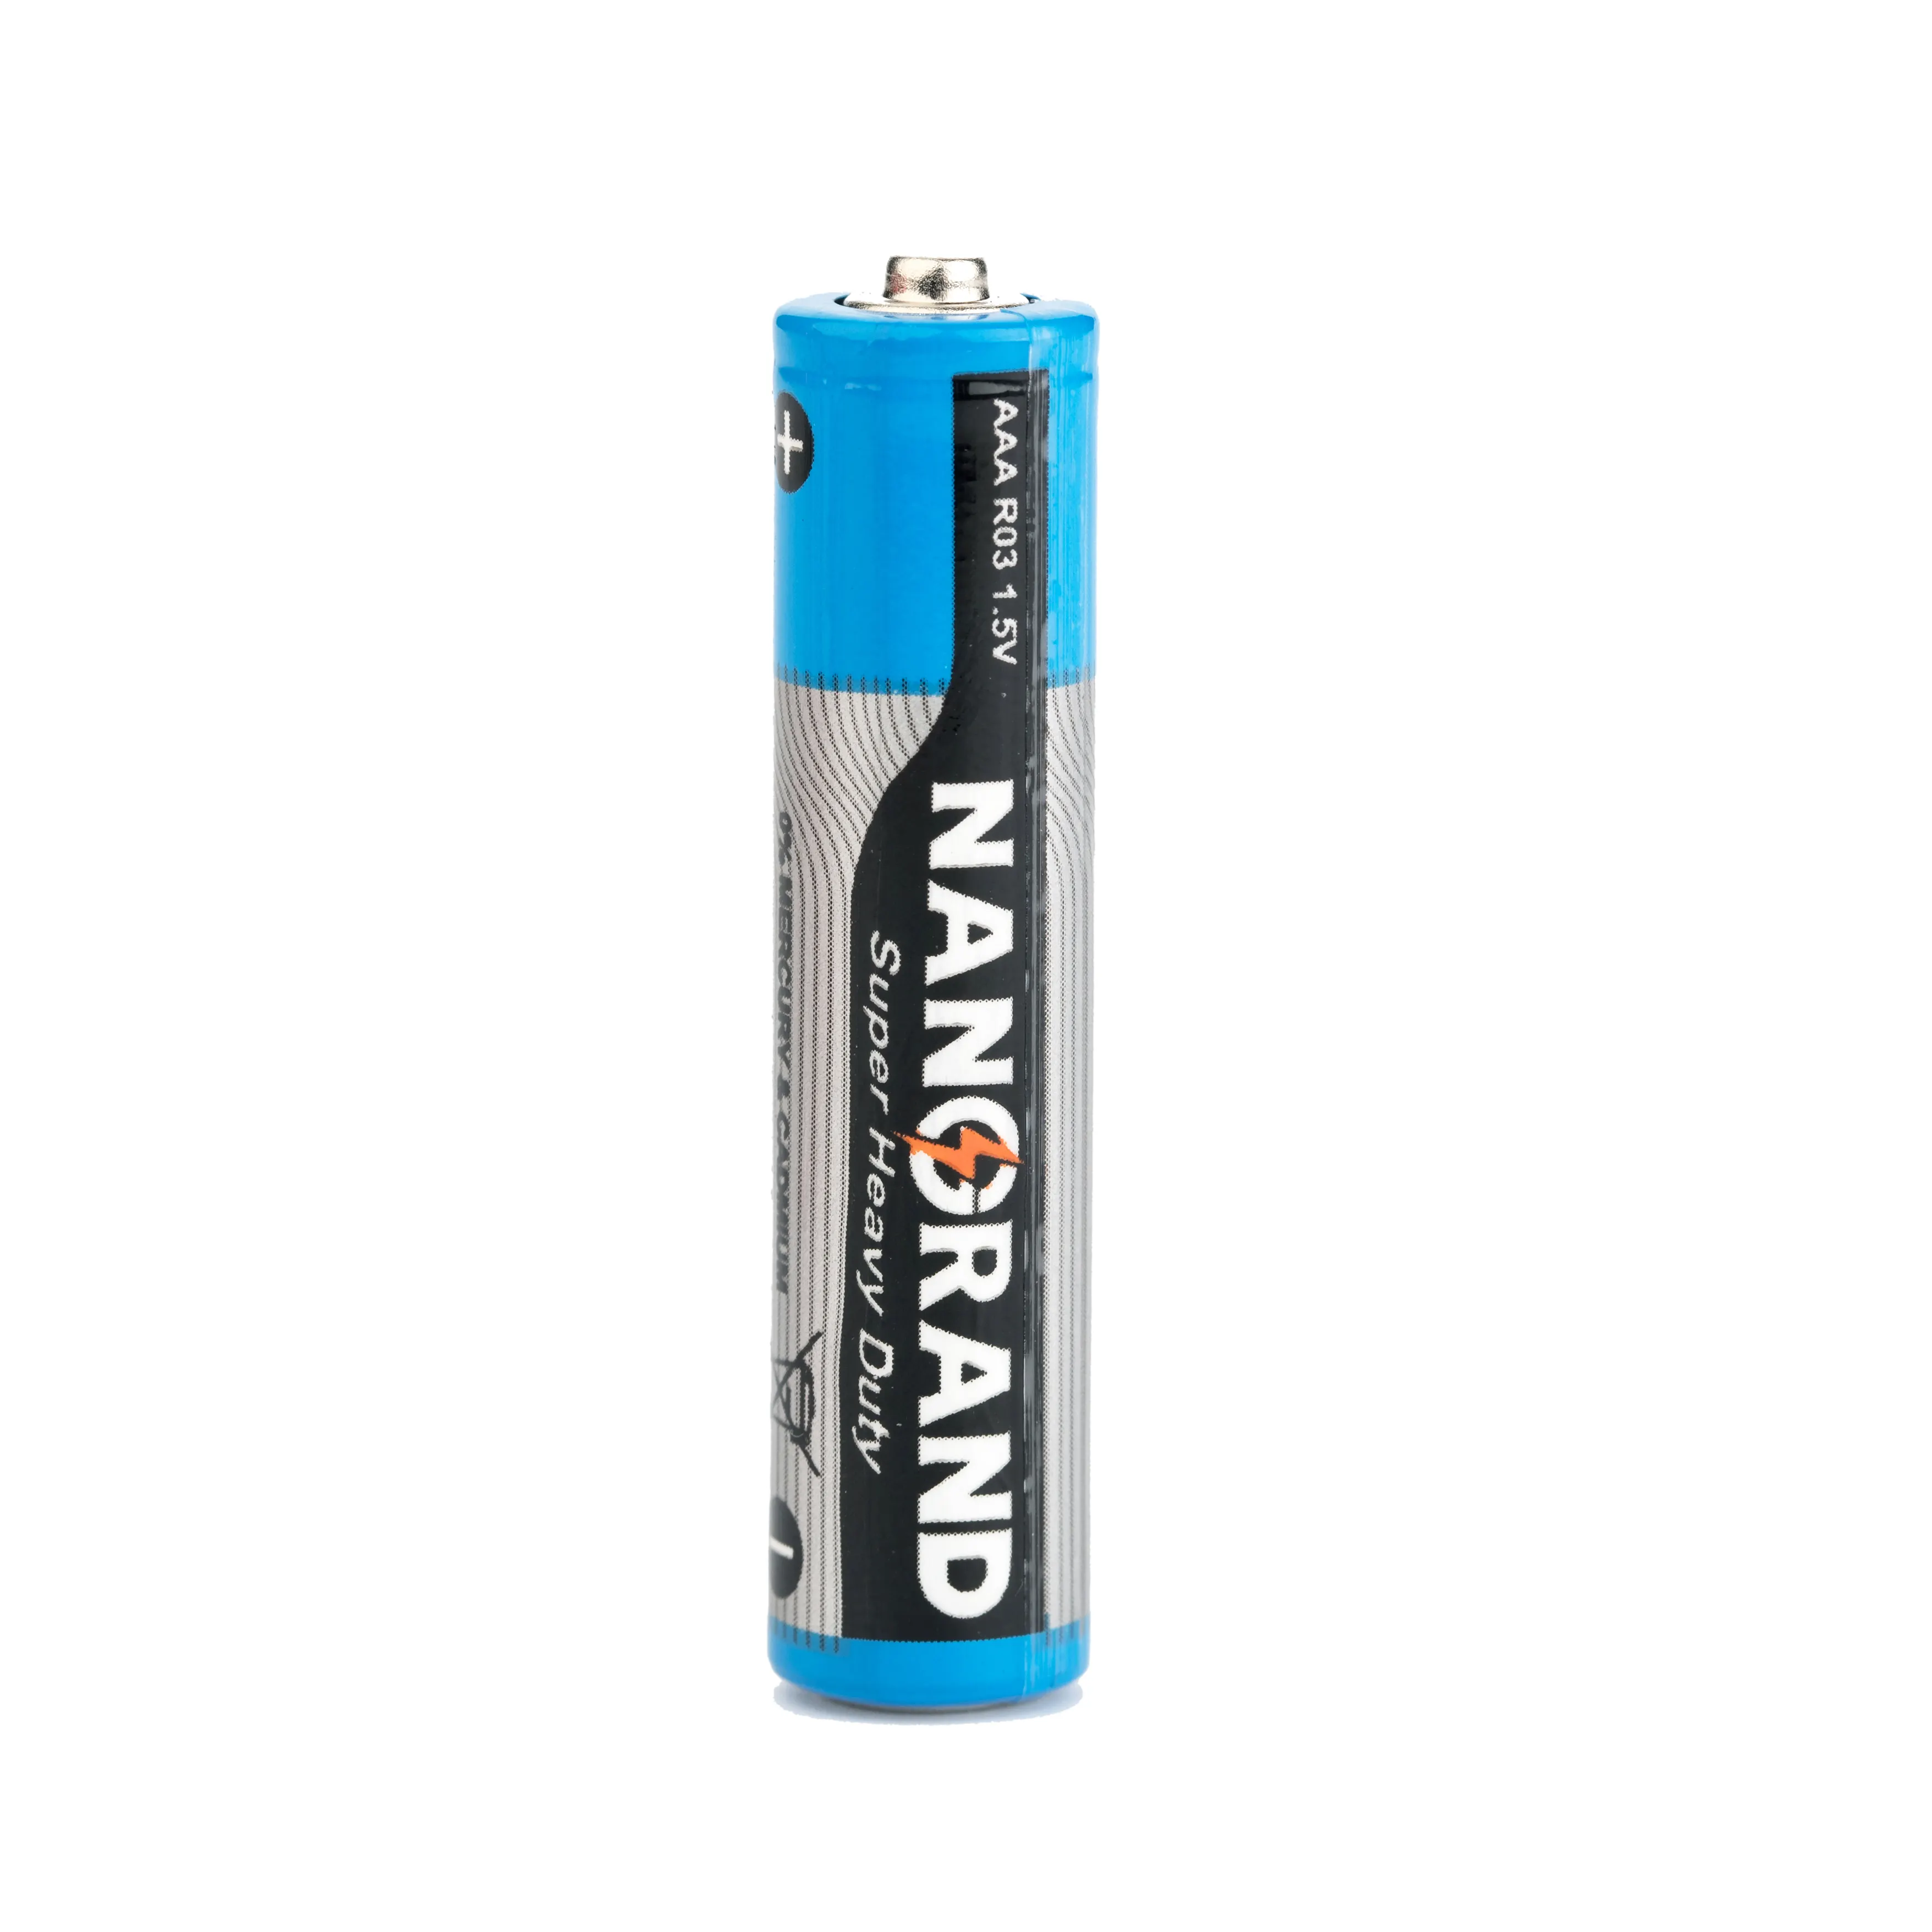 Extra Pesado batería aaa de carbono de zinc 1,5 v